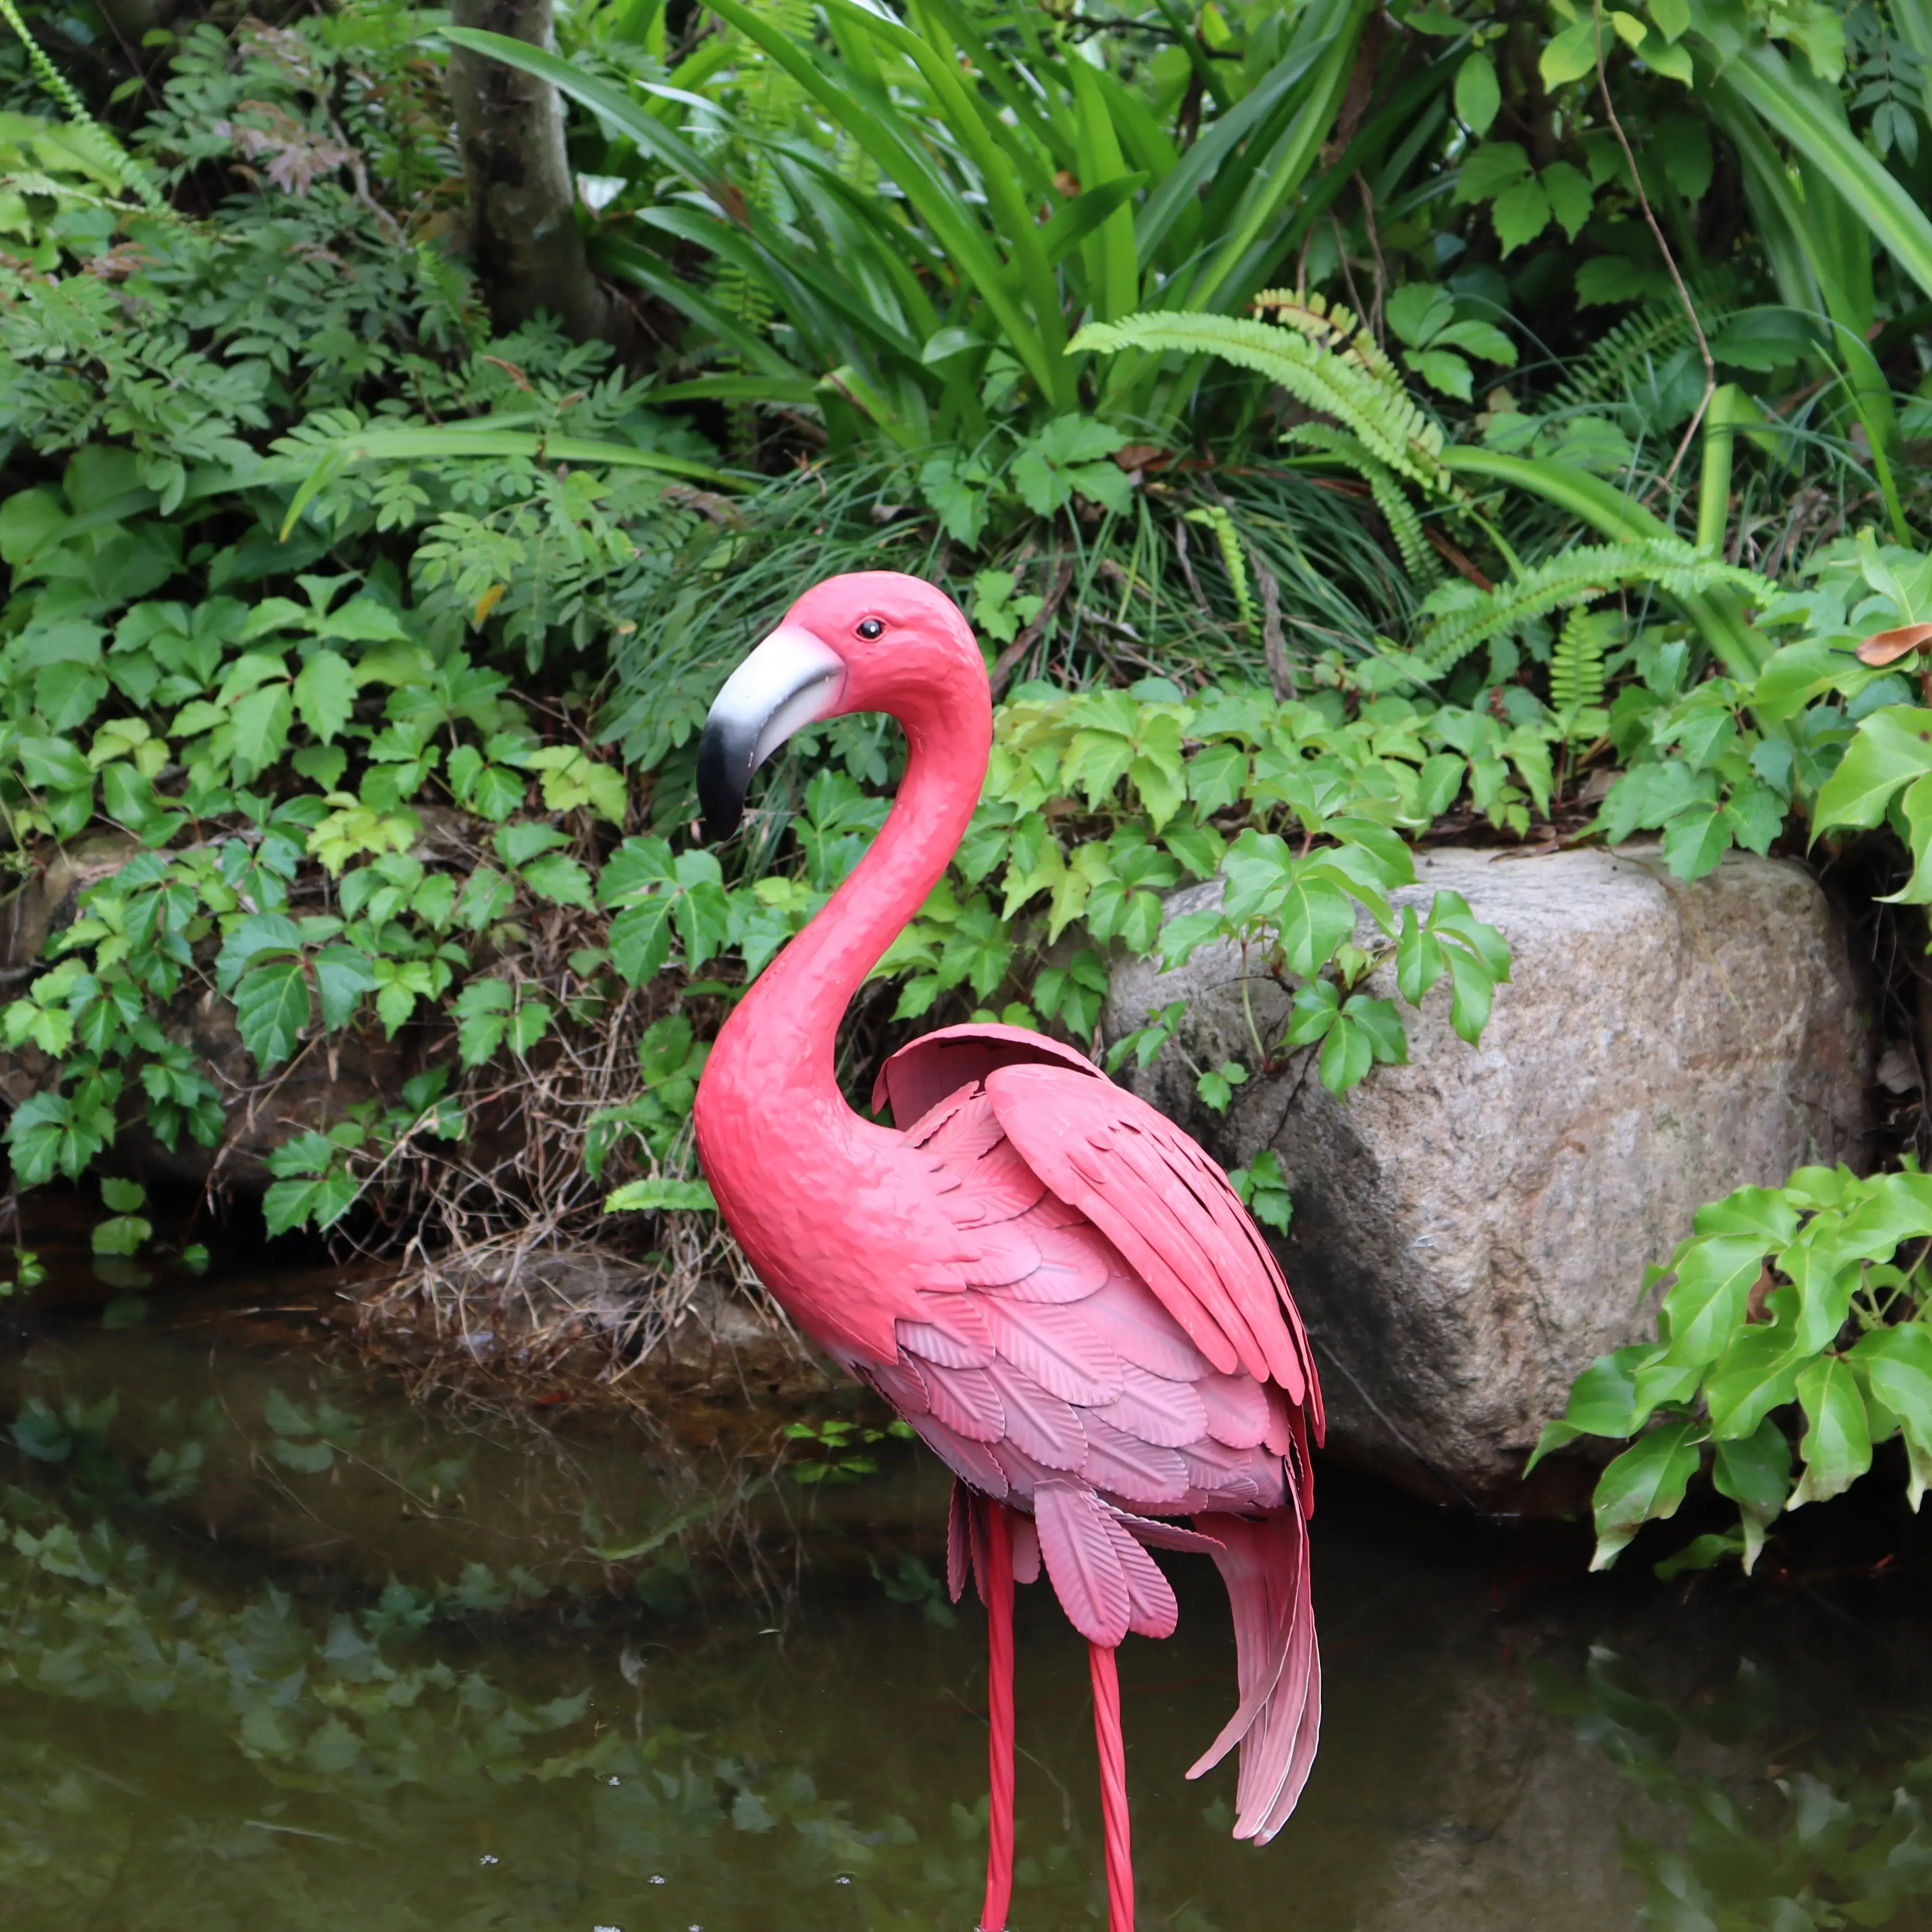 Metall-Flamingo-Garten-Dekoration Metallkunst Outdoor-Dekoration Familie Metall-Fußstecke für den Garten